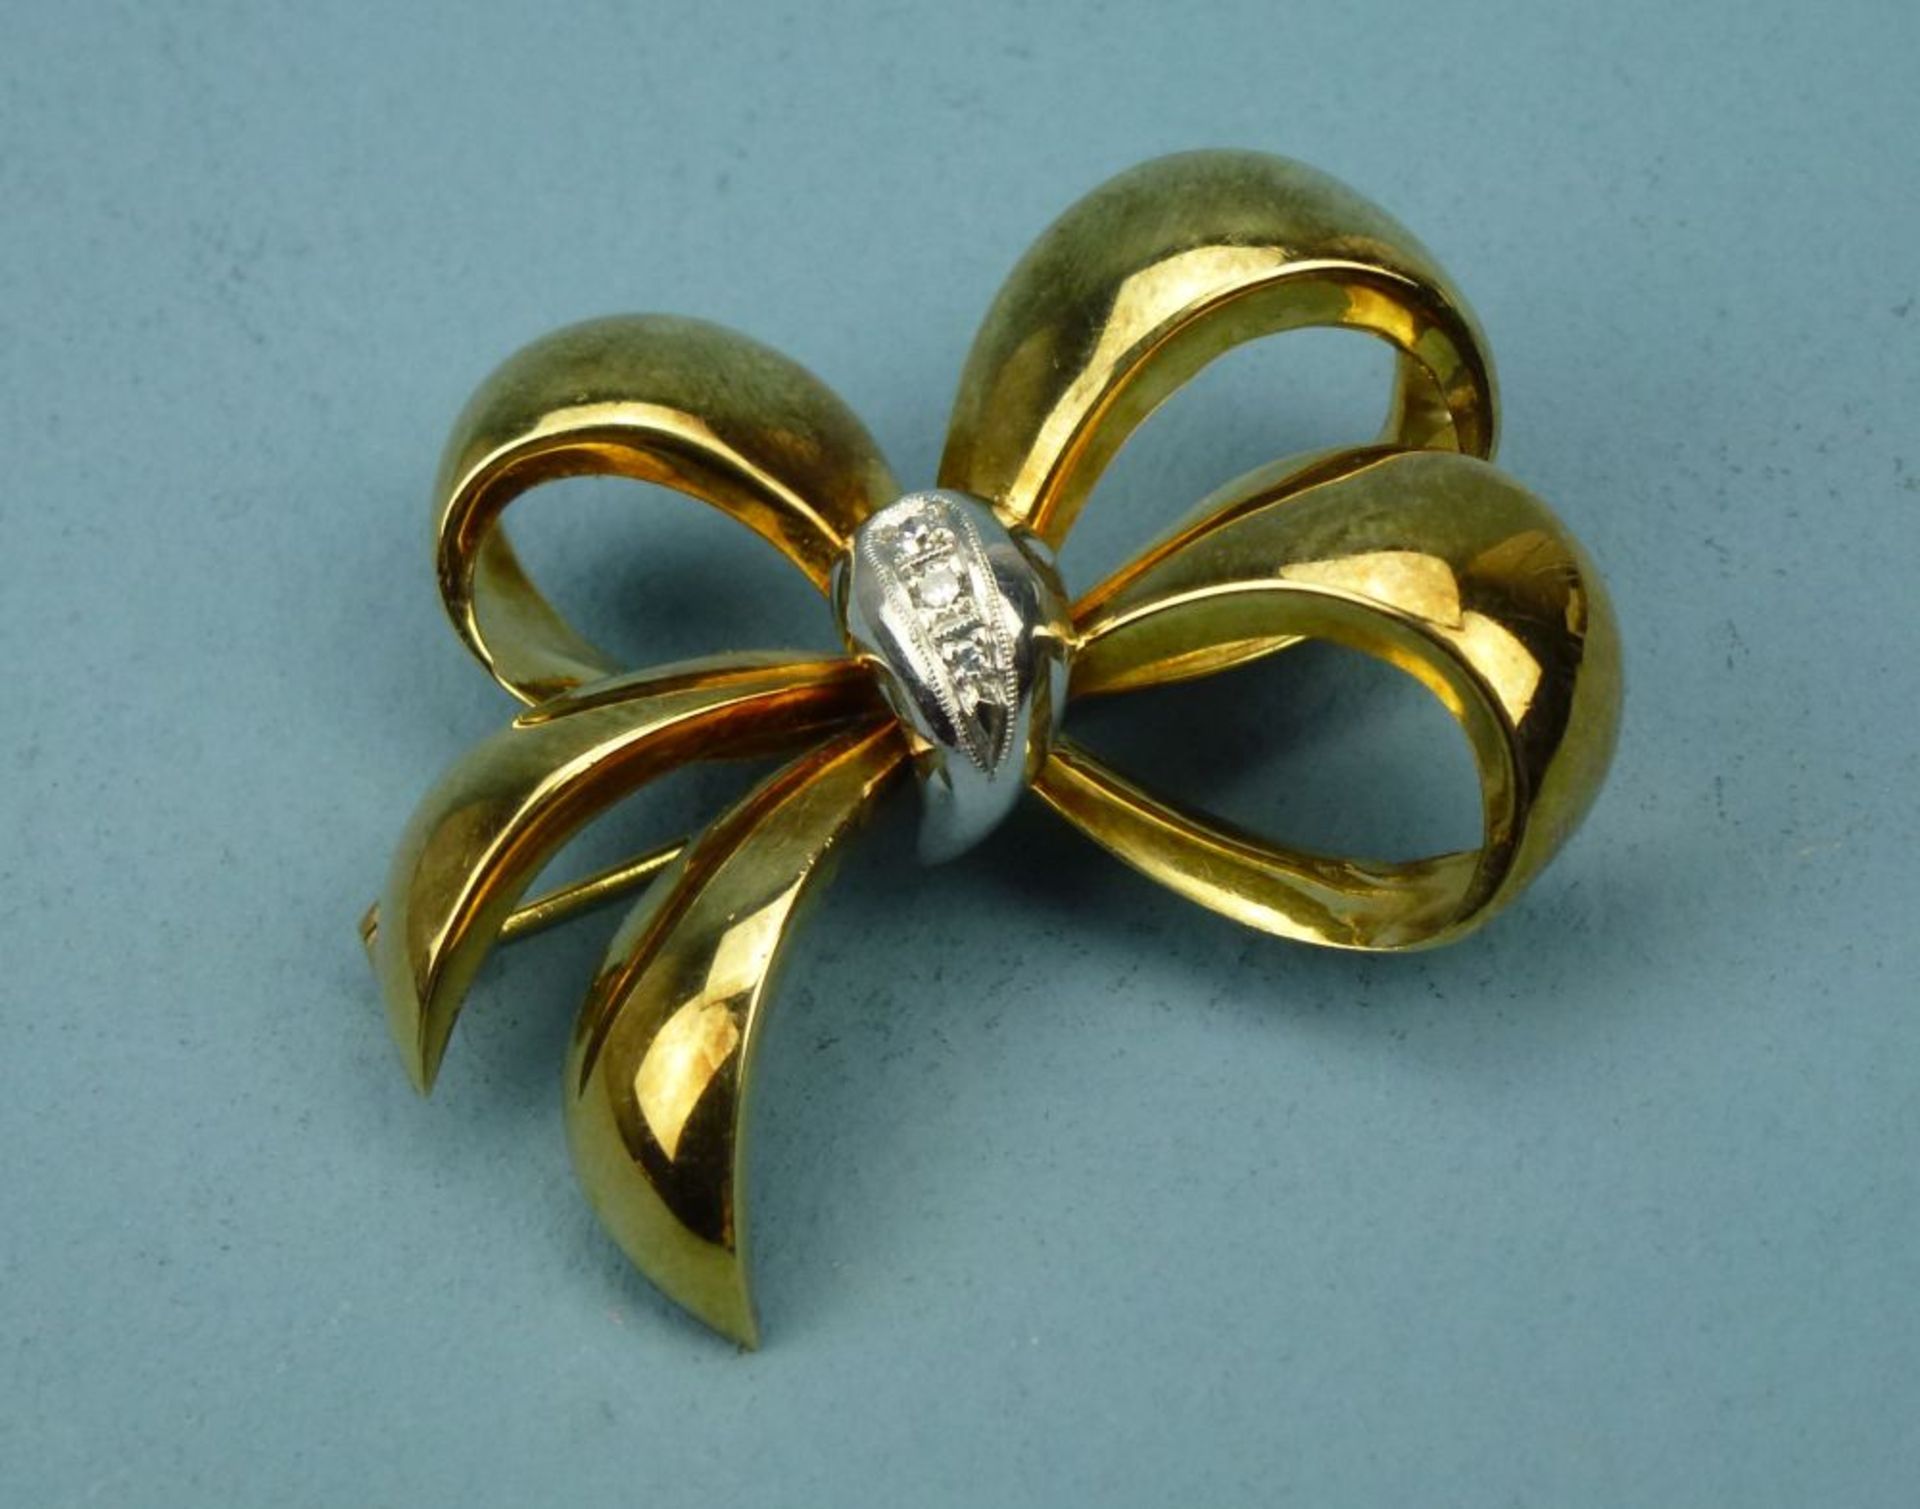 Schleifenbrosche, 585er Gelb-/WeißgoldSchleifenknoten bes. m. 3 Diamanten (ges. ca. 0,06 ct), ges.